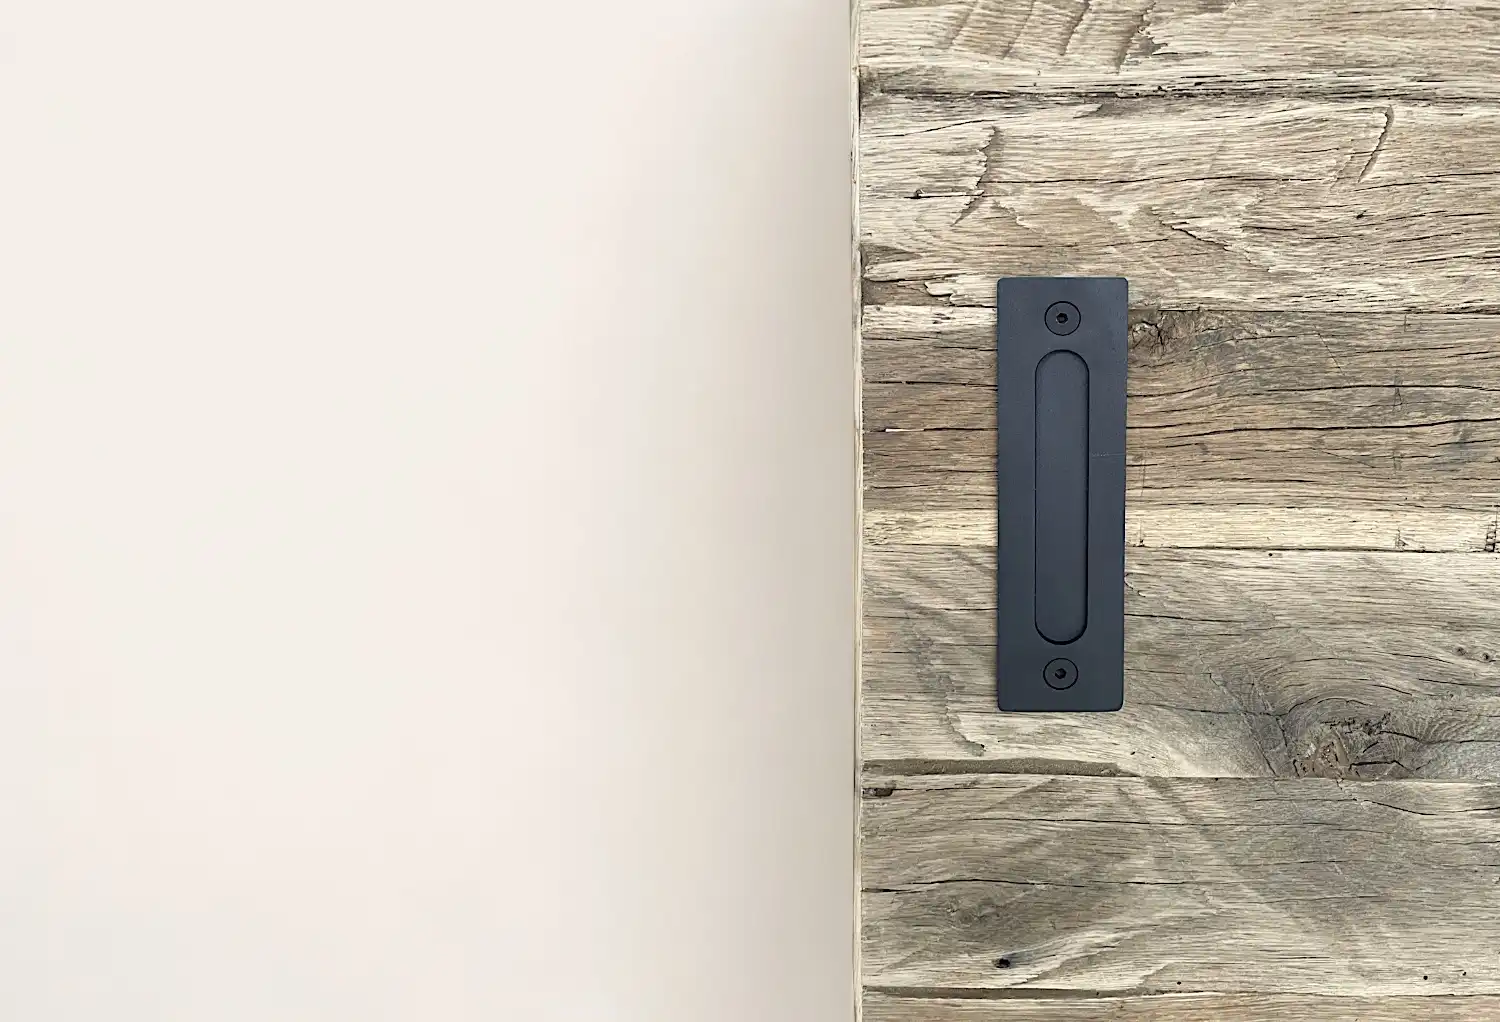 Une poignée de porte noire moderne est montée sur une surface en bois vieilli au grain texturé, adjacente à un mur blanc uni.